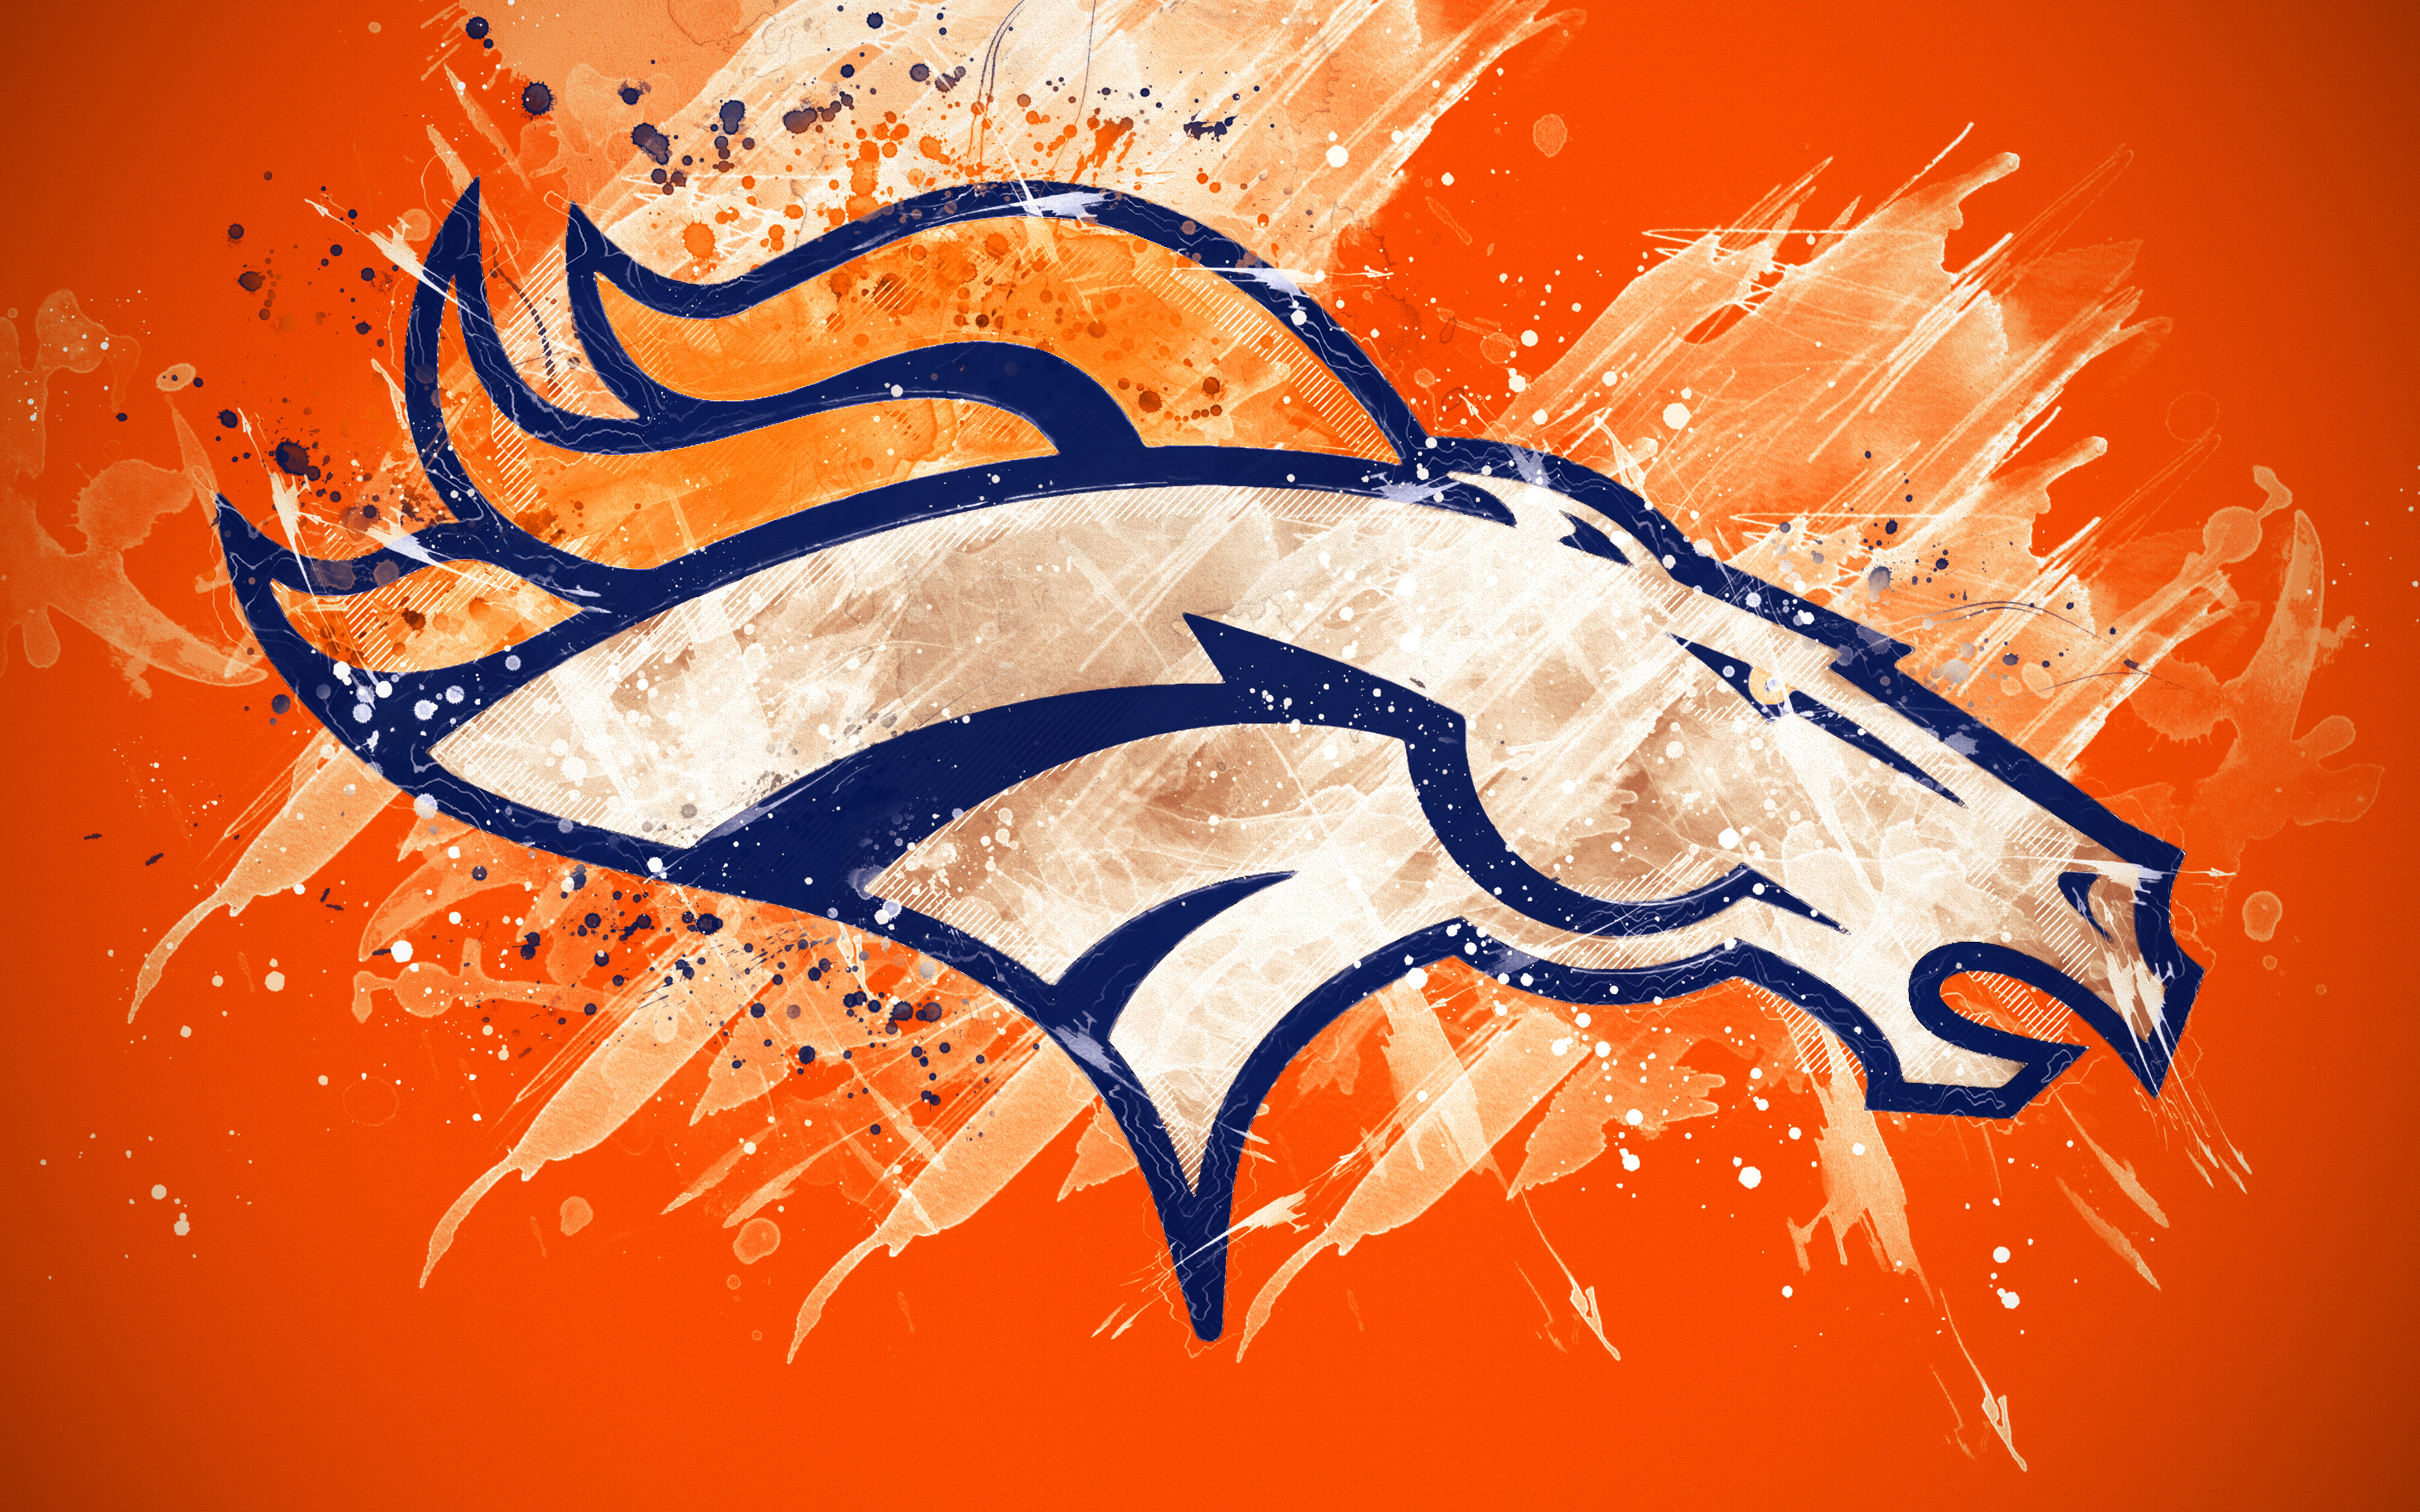 Denver Broncos Emblem Logo Nfl 3840x2400